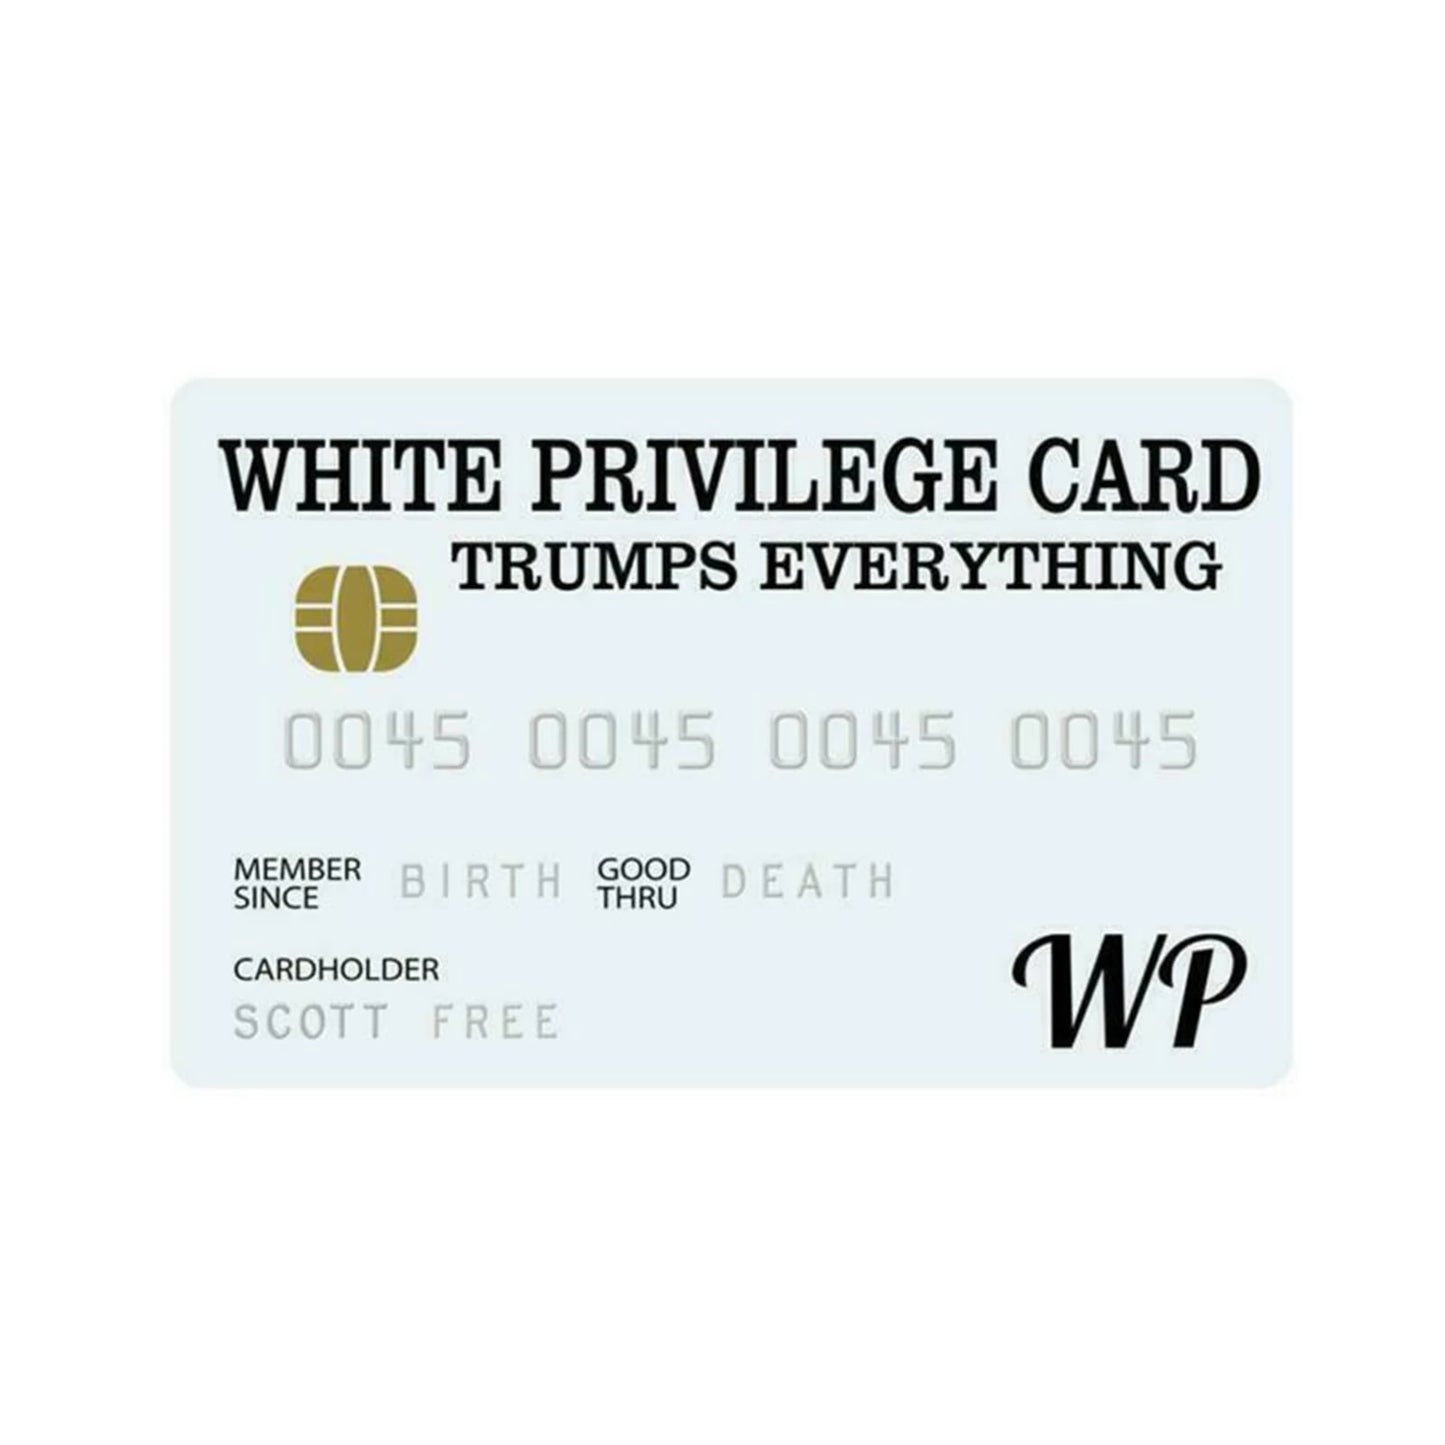 White privilege Card